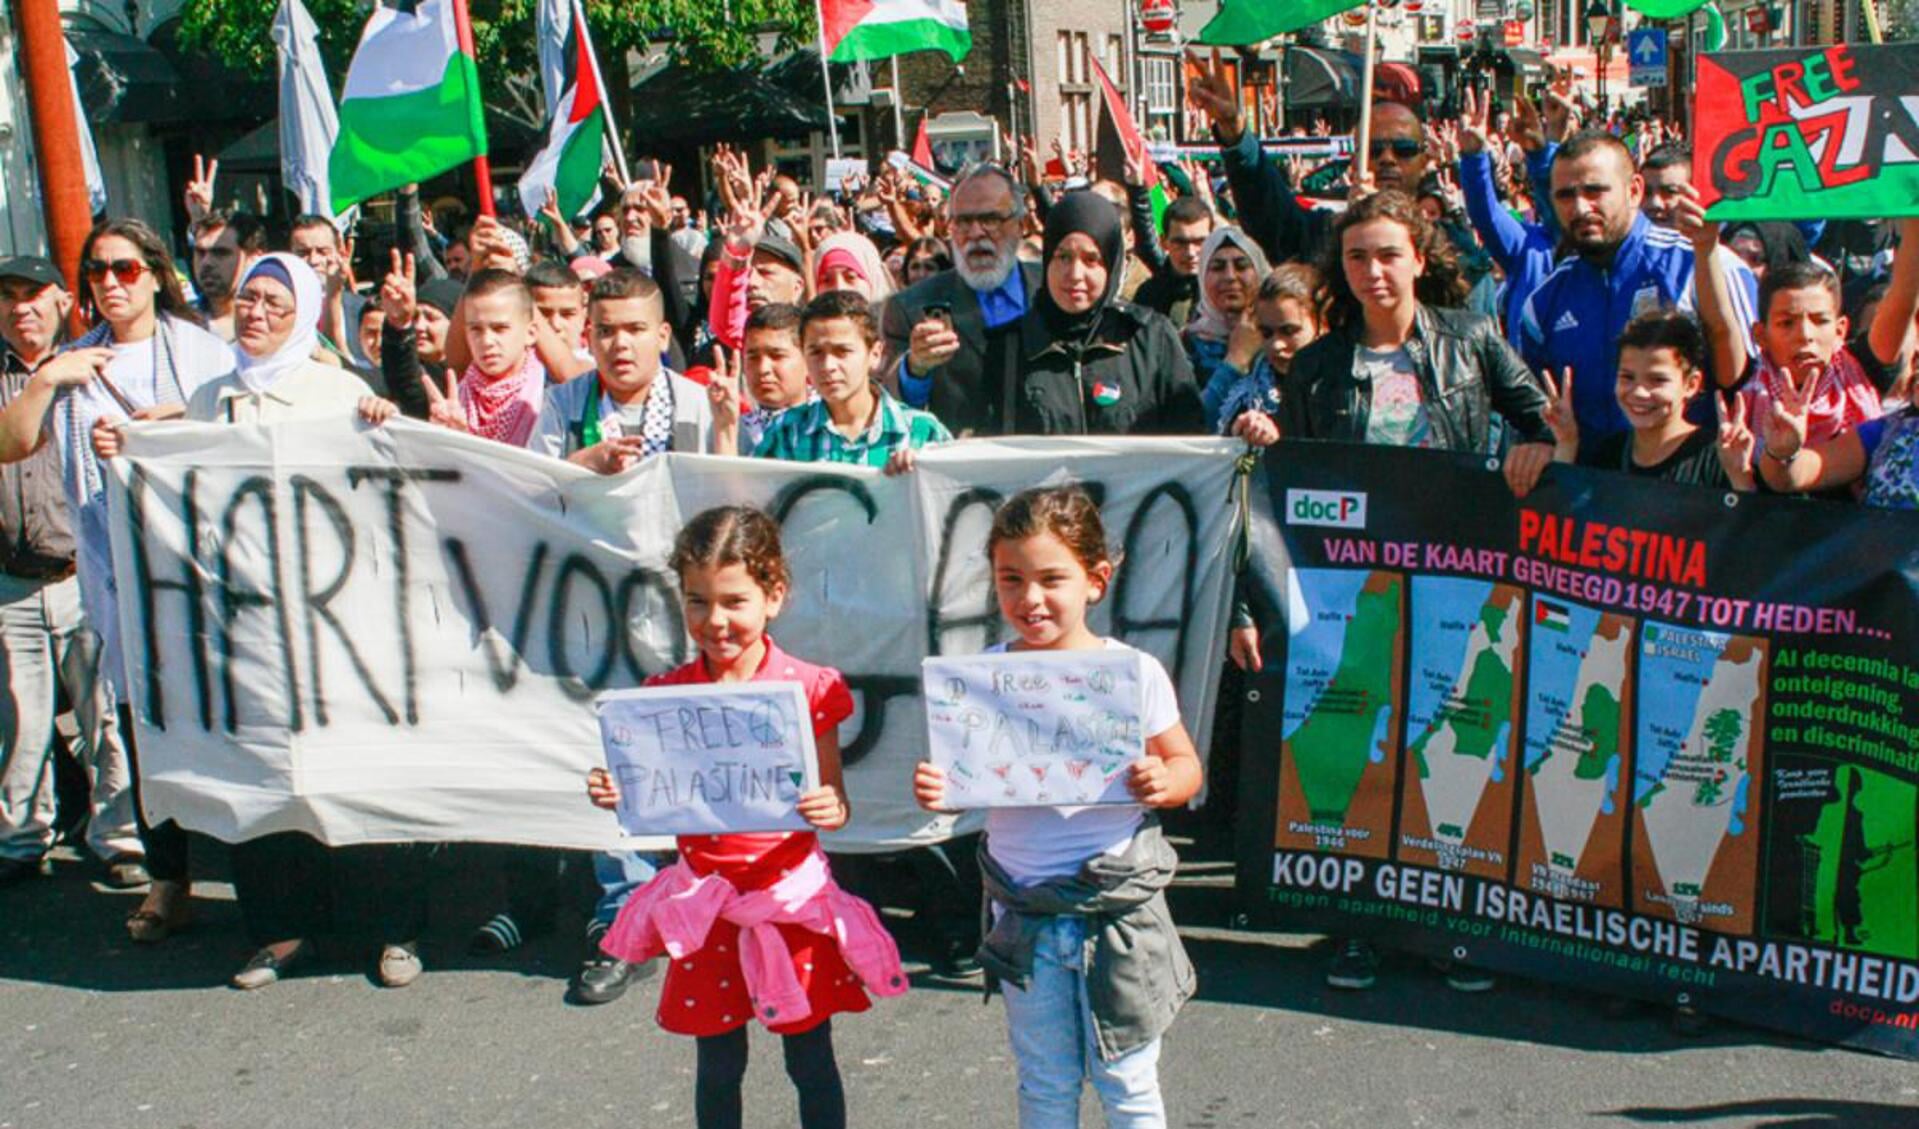 Hart voor Gaza demonstratie in Breda.